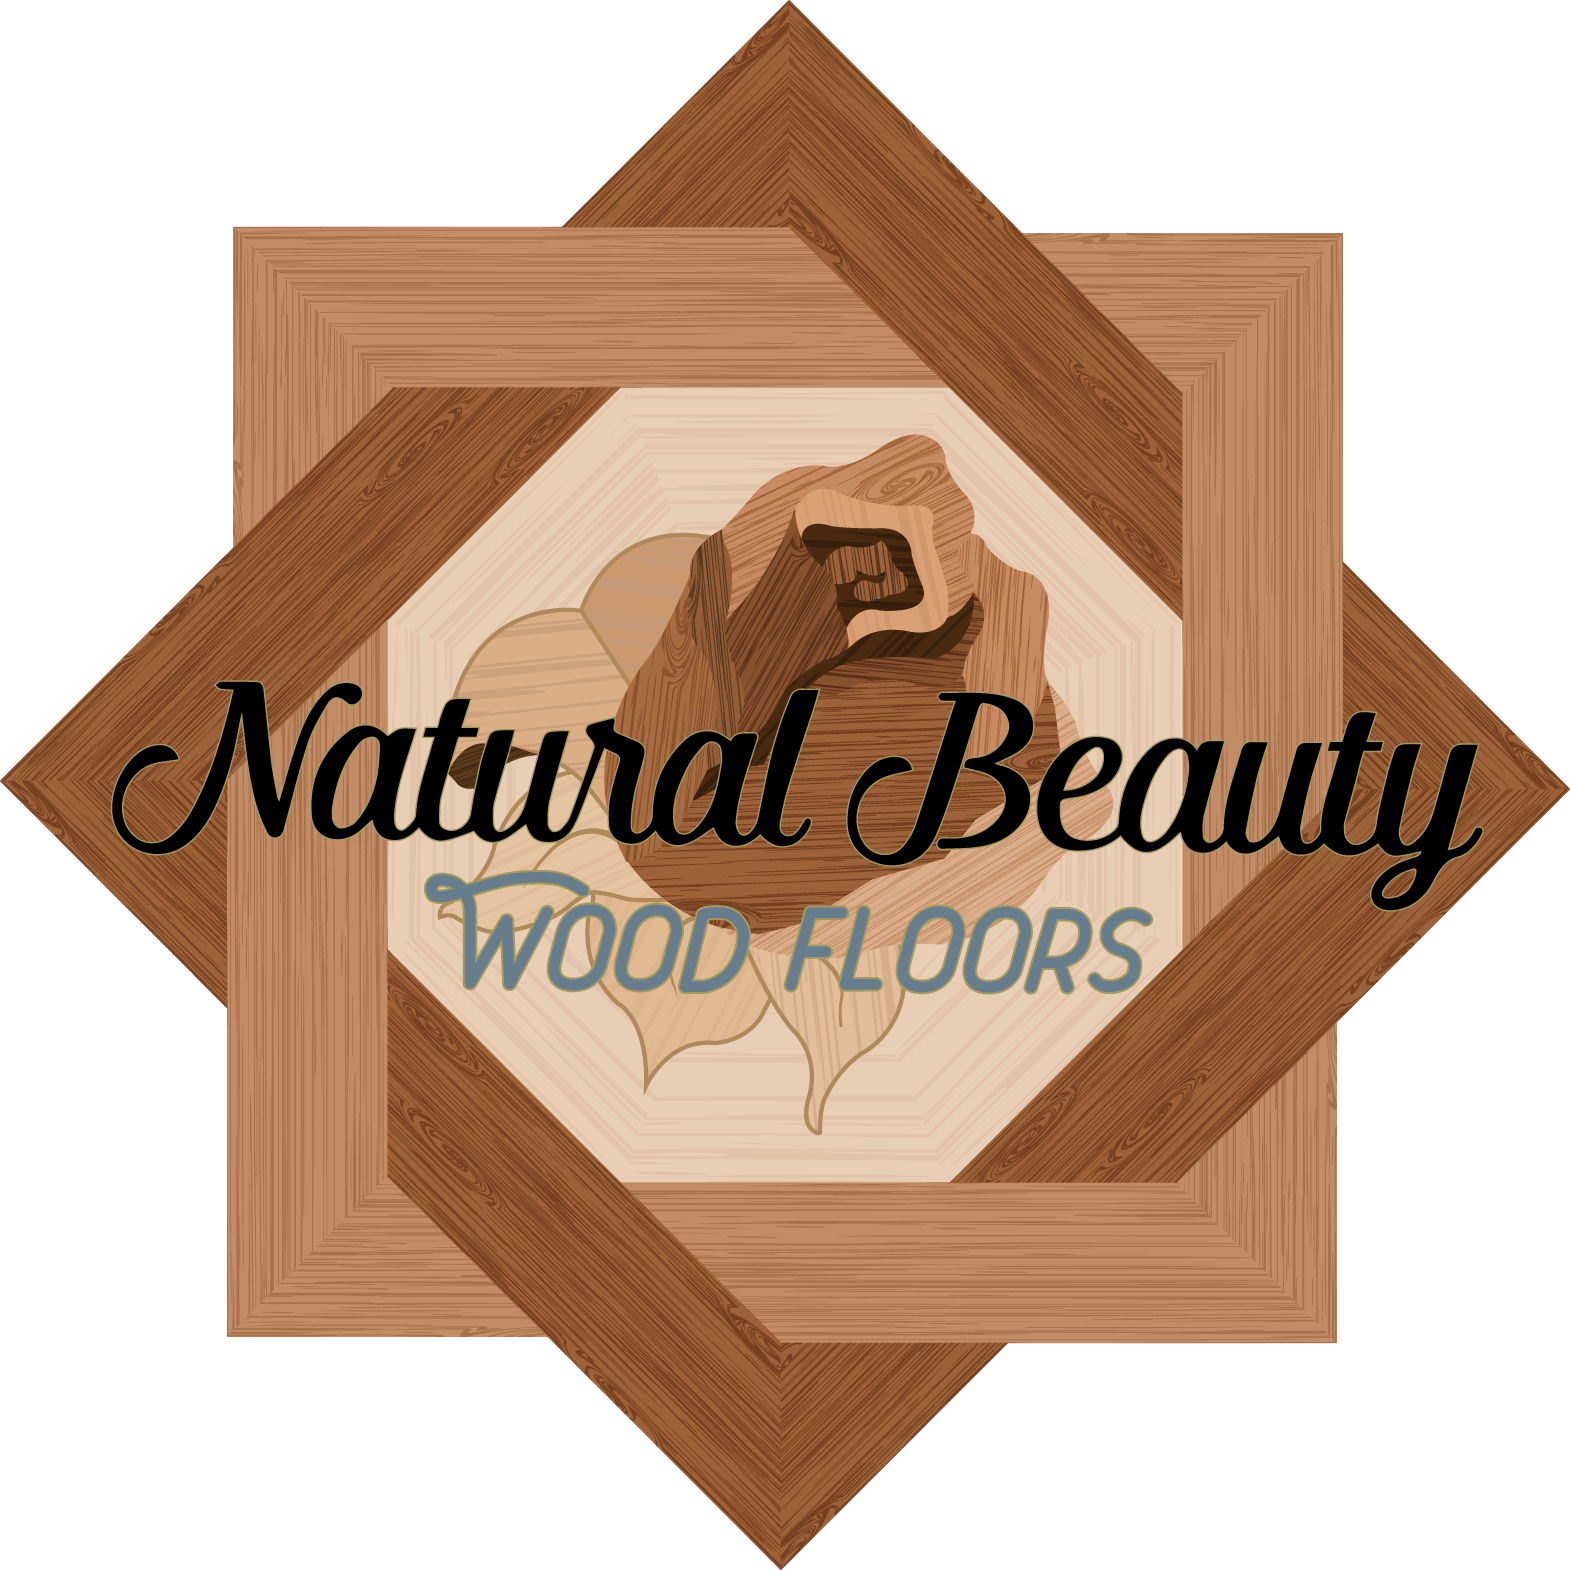 Detroit Hardwood Flooring Contractor, Hardwood Floor Staining Companies